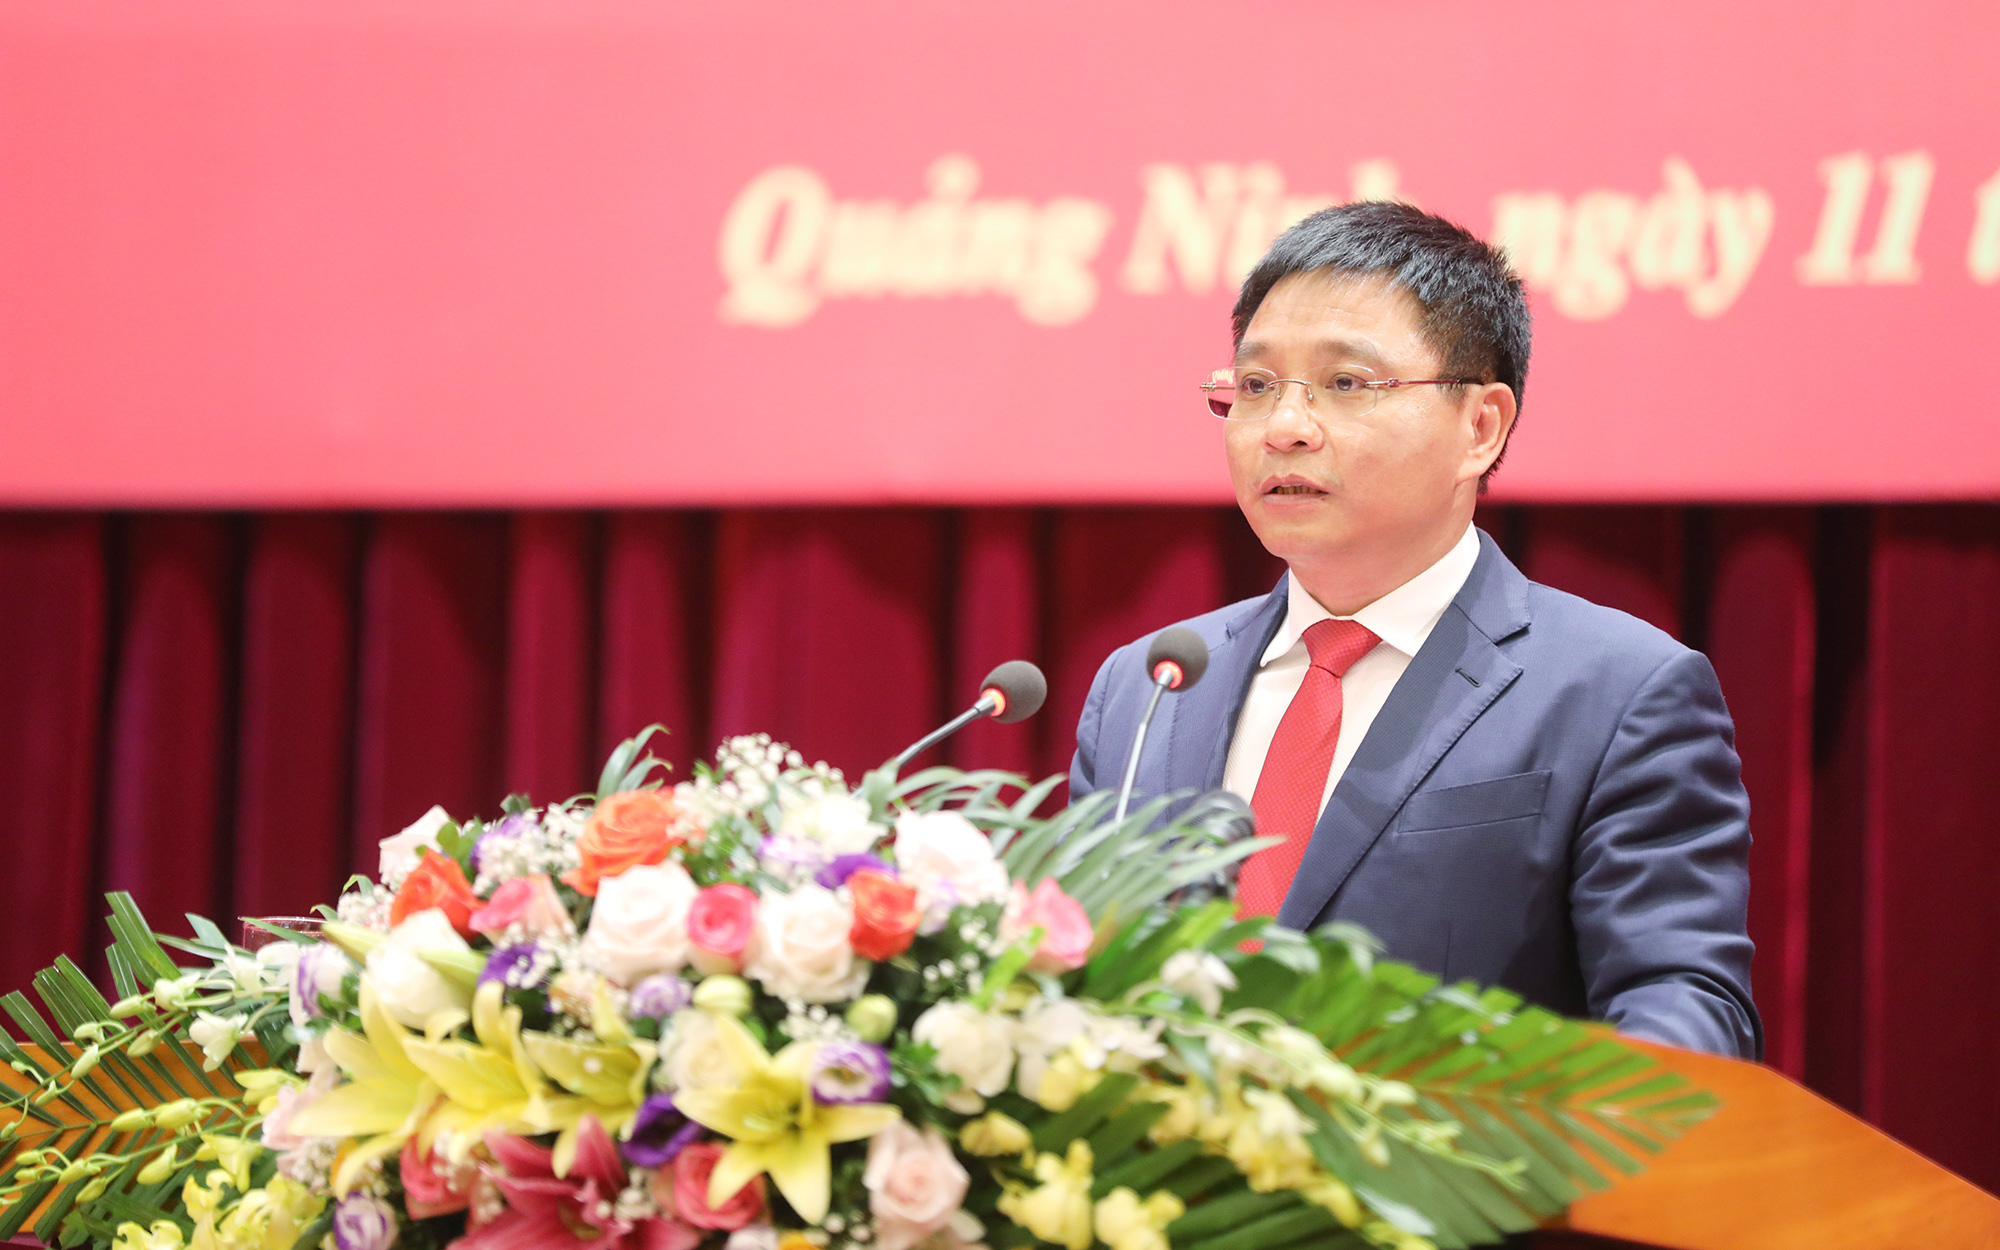 Chủ tịch tỉnh Quảng Ninh Nguyễn Văn Thắng được giới thiệu bầu Bí thư Tỉnh ủy Điện Biên